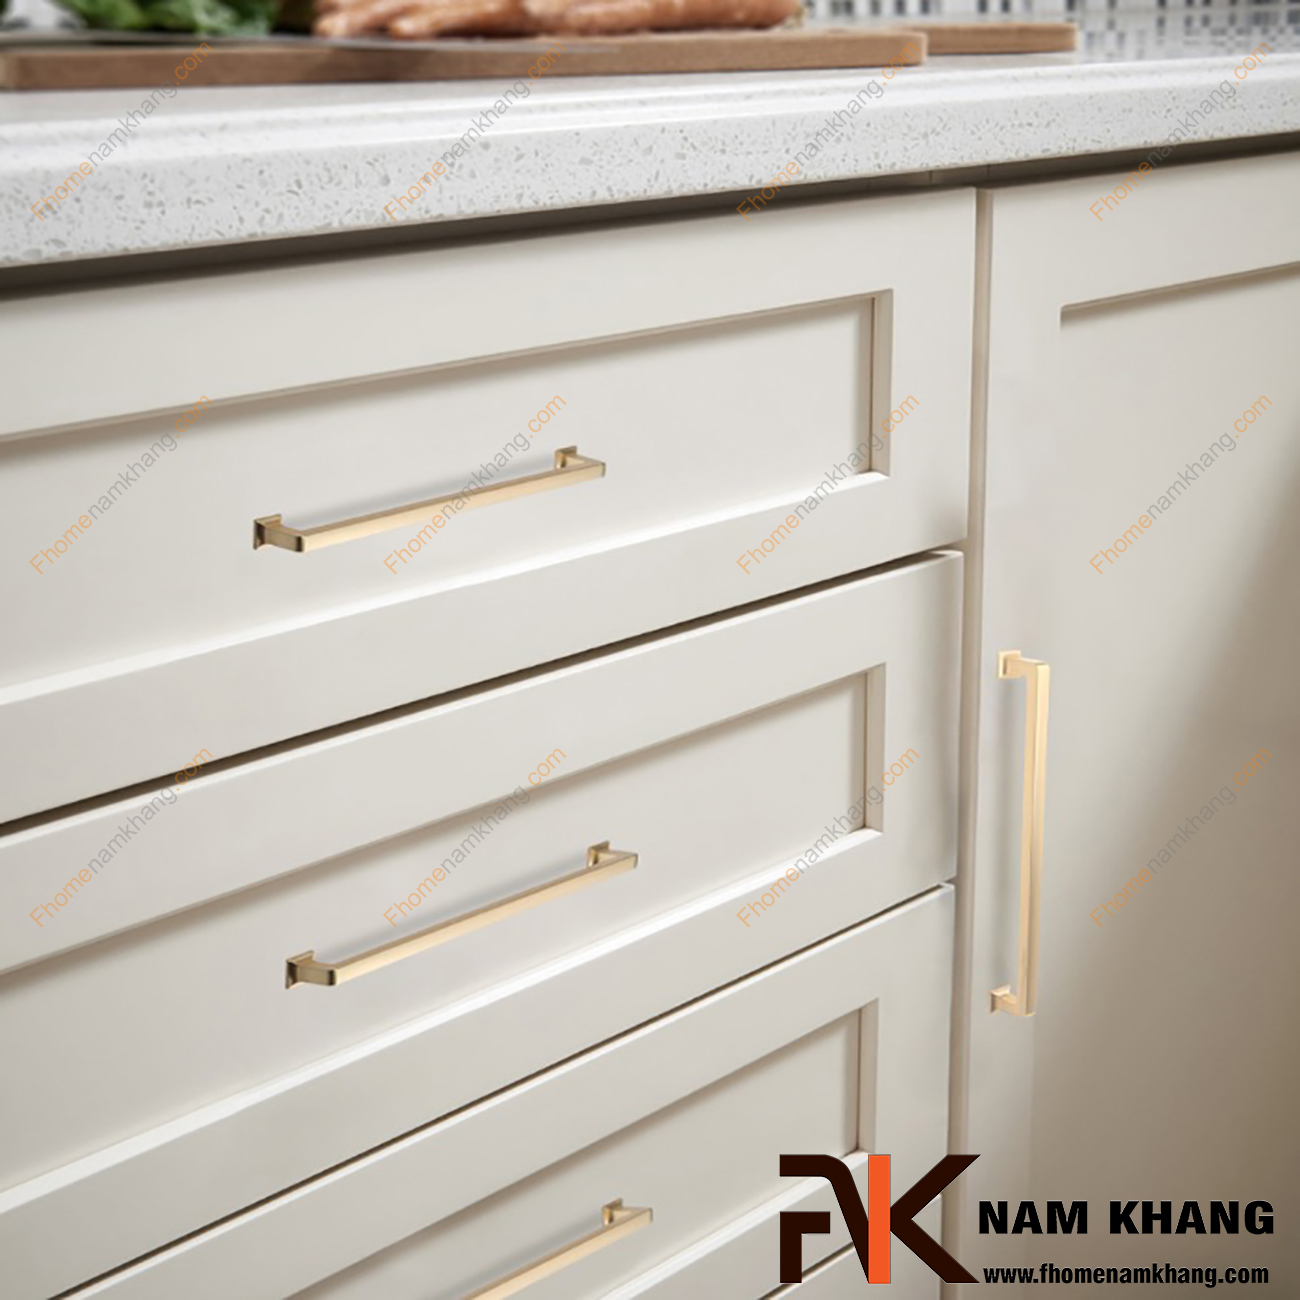 Tay nắm tủ cao cấp màu vàng mờ NK404-VM là một thiết kế tay nắm tủ có thiết kế khá đơn giản. Bề ngoài của tay nắm dạng một thanh vuông nguyên khối được xử lý bo tròn các góc cạnh hiện đại. 